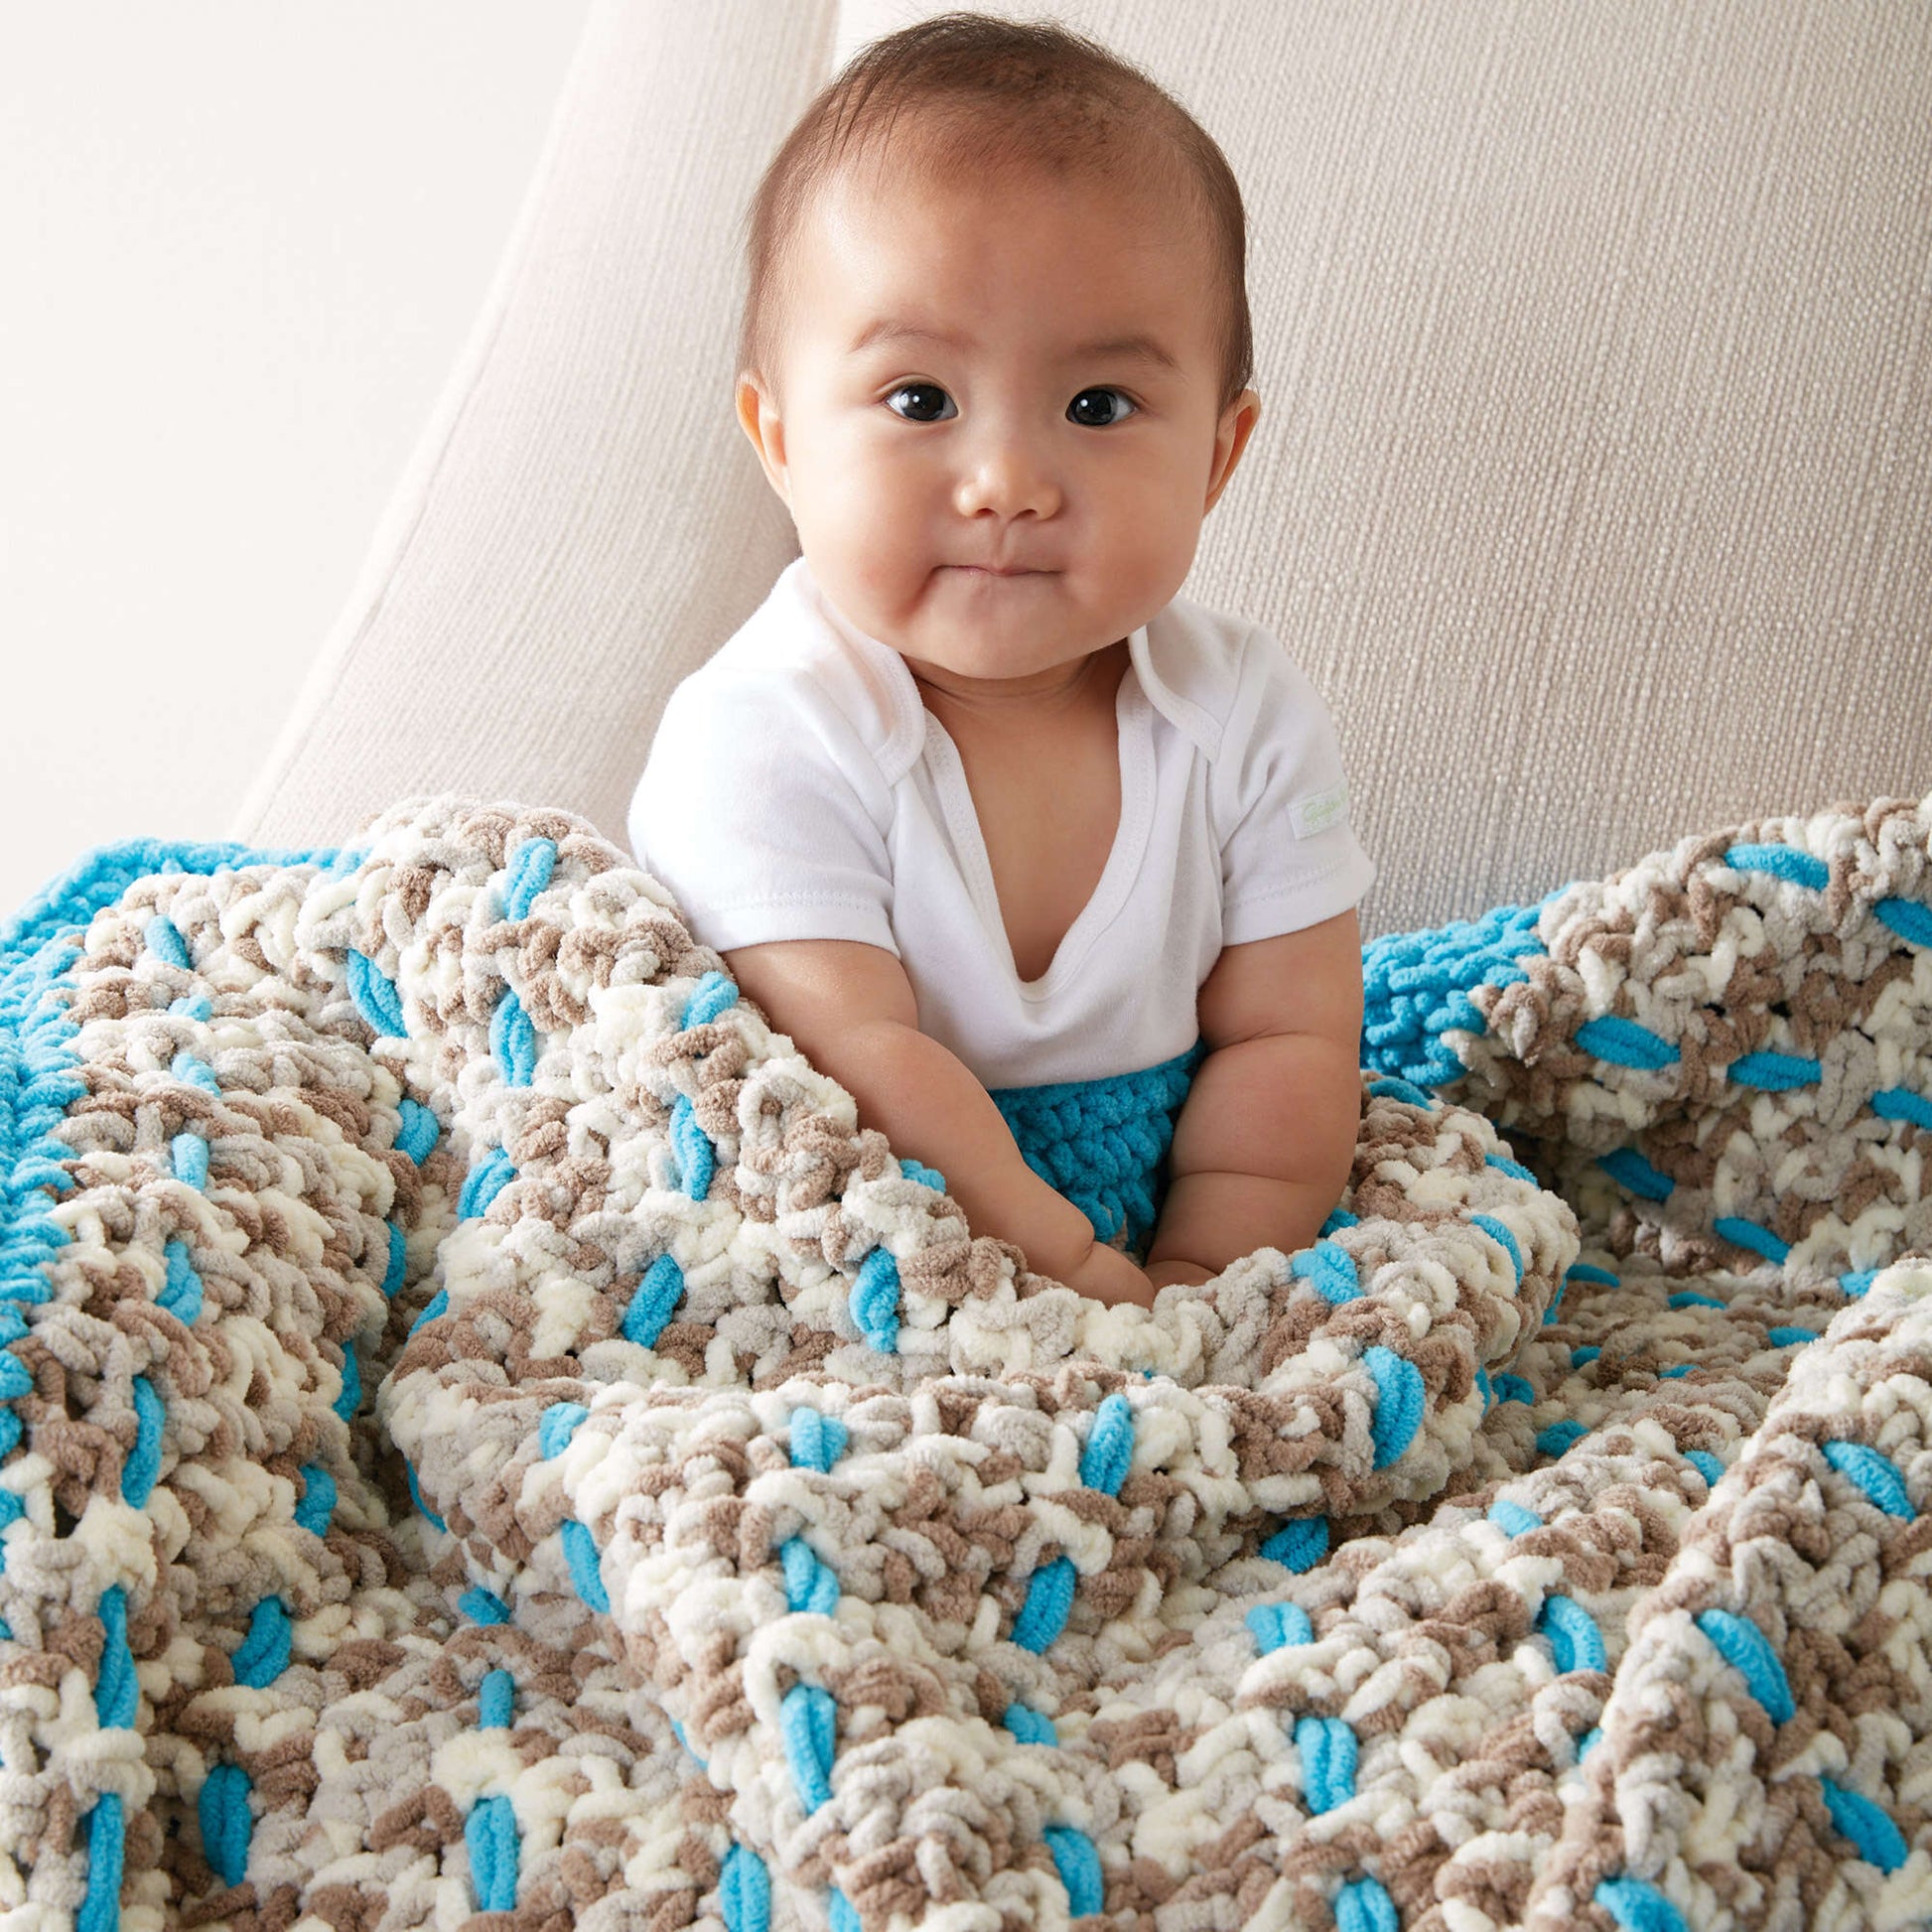 Bernat Little Dreamweaver Crochet Blanket Crochet Blanket made in Bernat Baby Blanket yarn